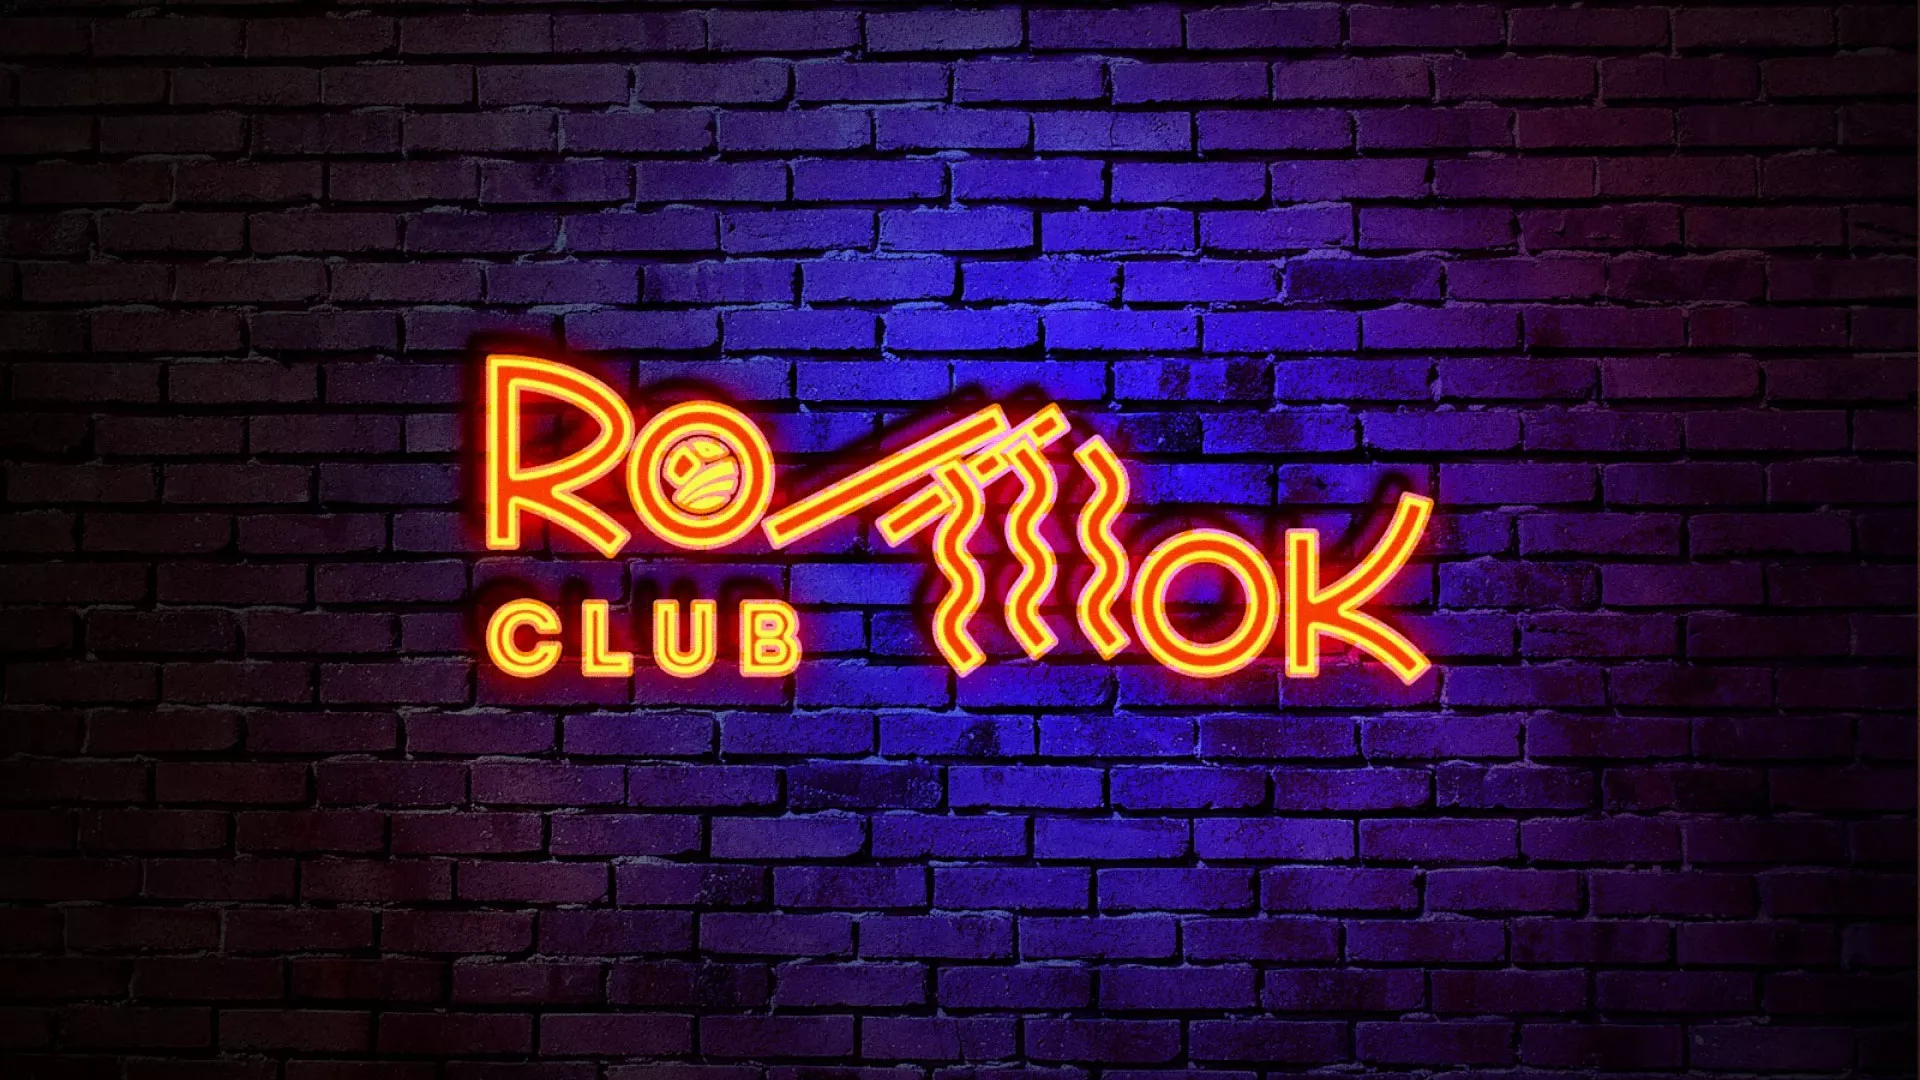 Разработка интерьерной вывески суши-бара «Roll Wok Club» в Железногорске-Илимском